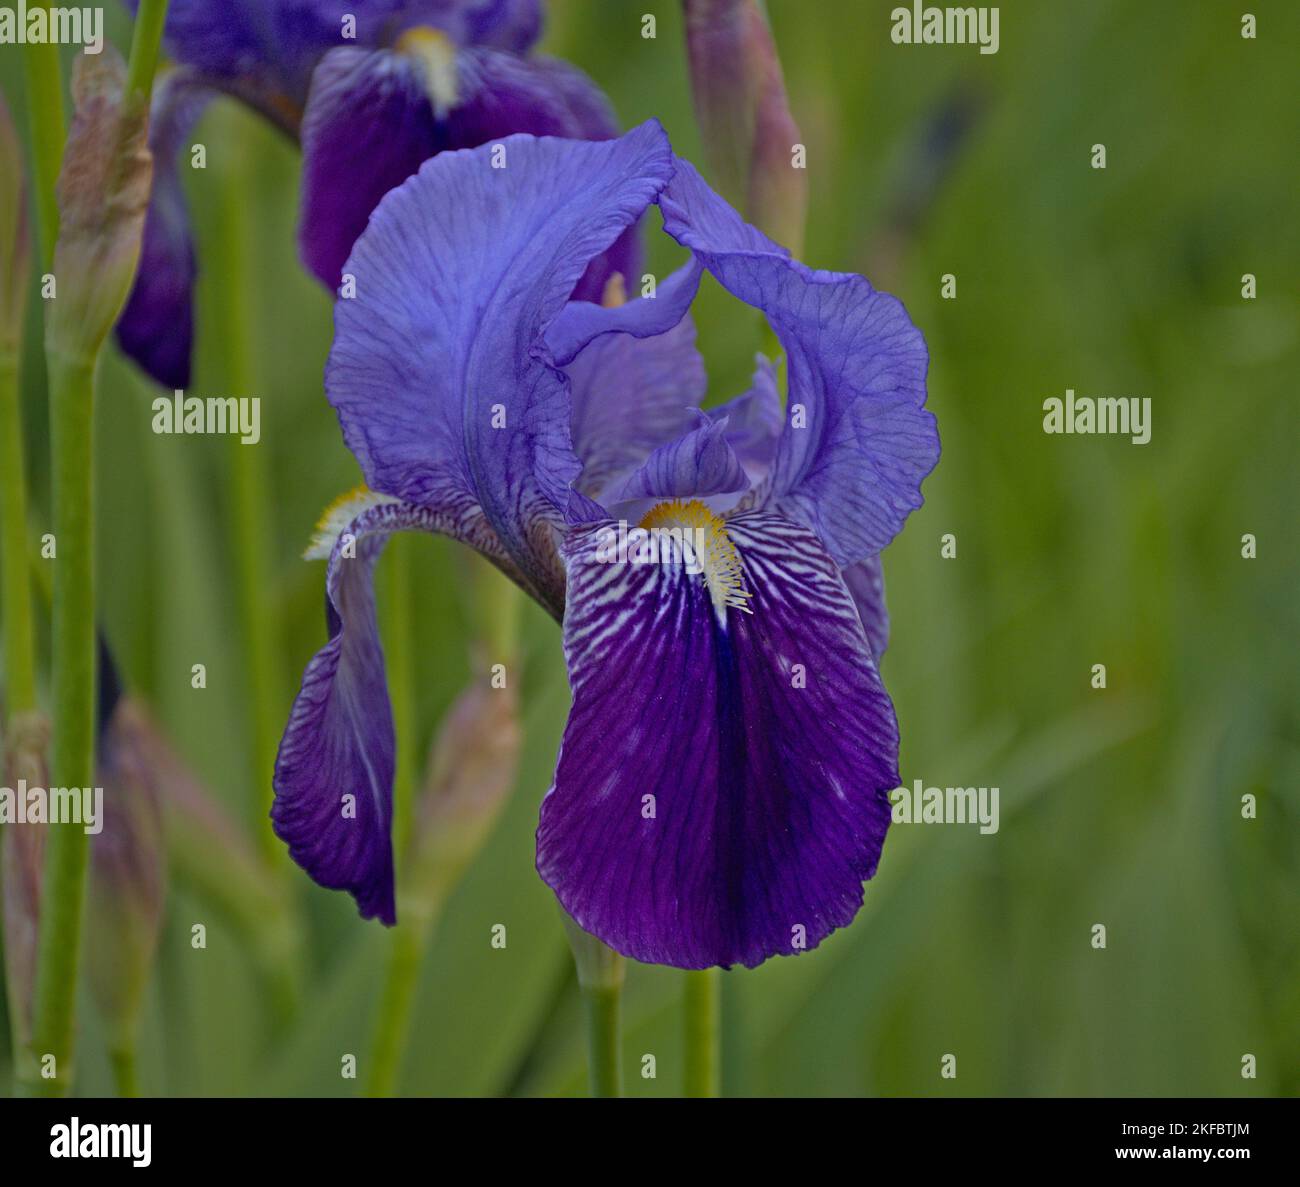 Macro fotografía de Blue Lily, Iris Germanica. Tradicionalmente cultivado en jardines, flores púrpura y azul. Foto de stock